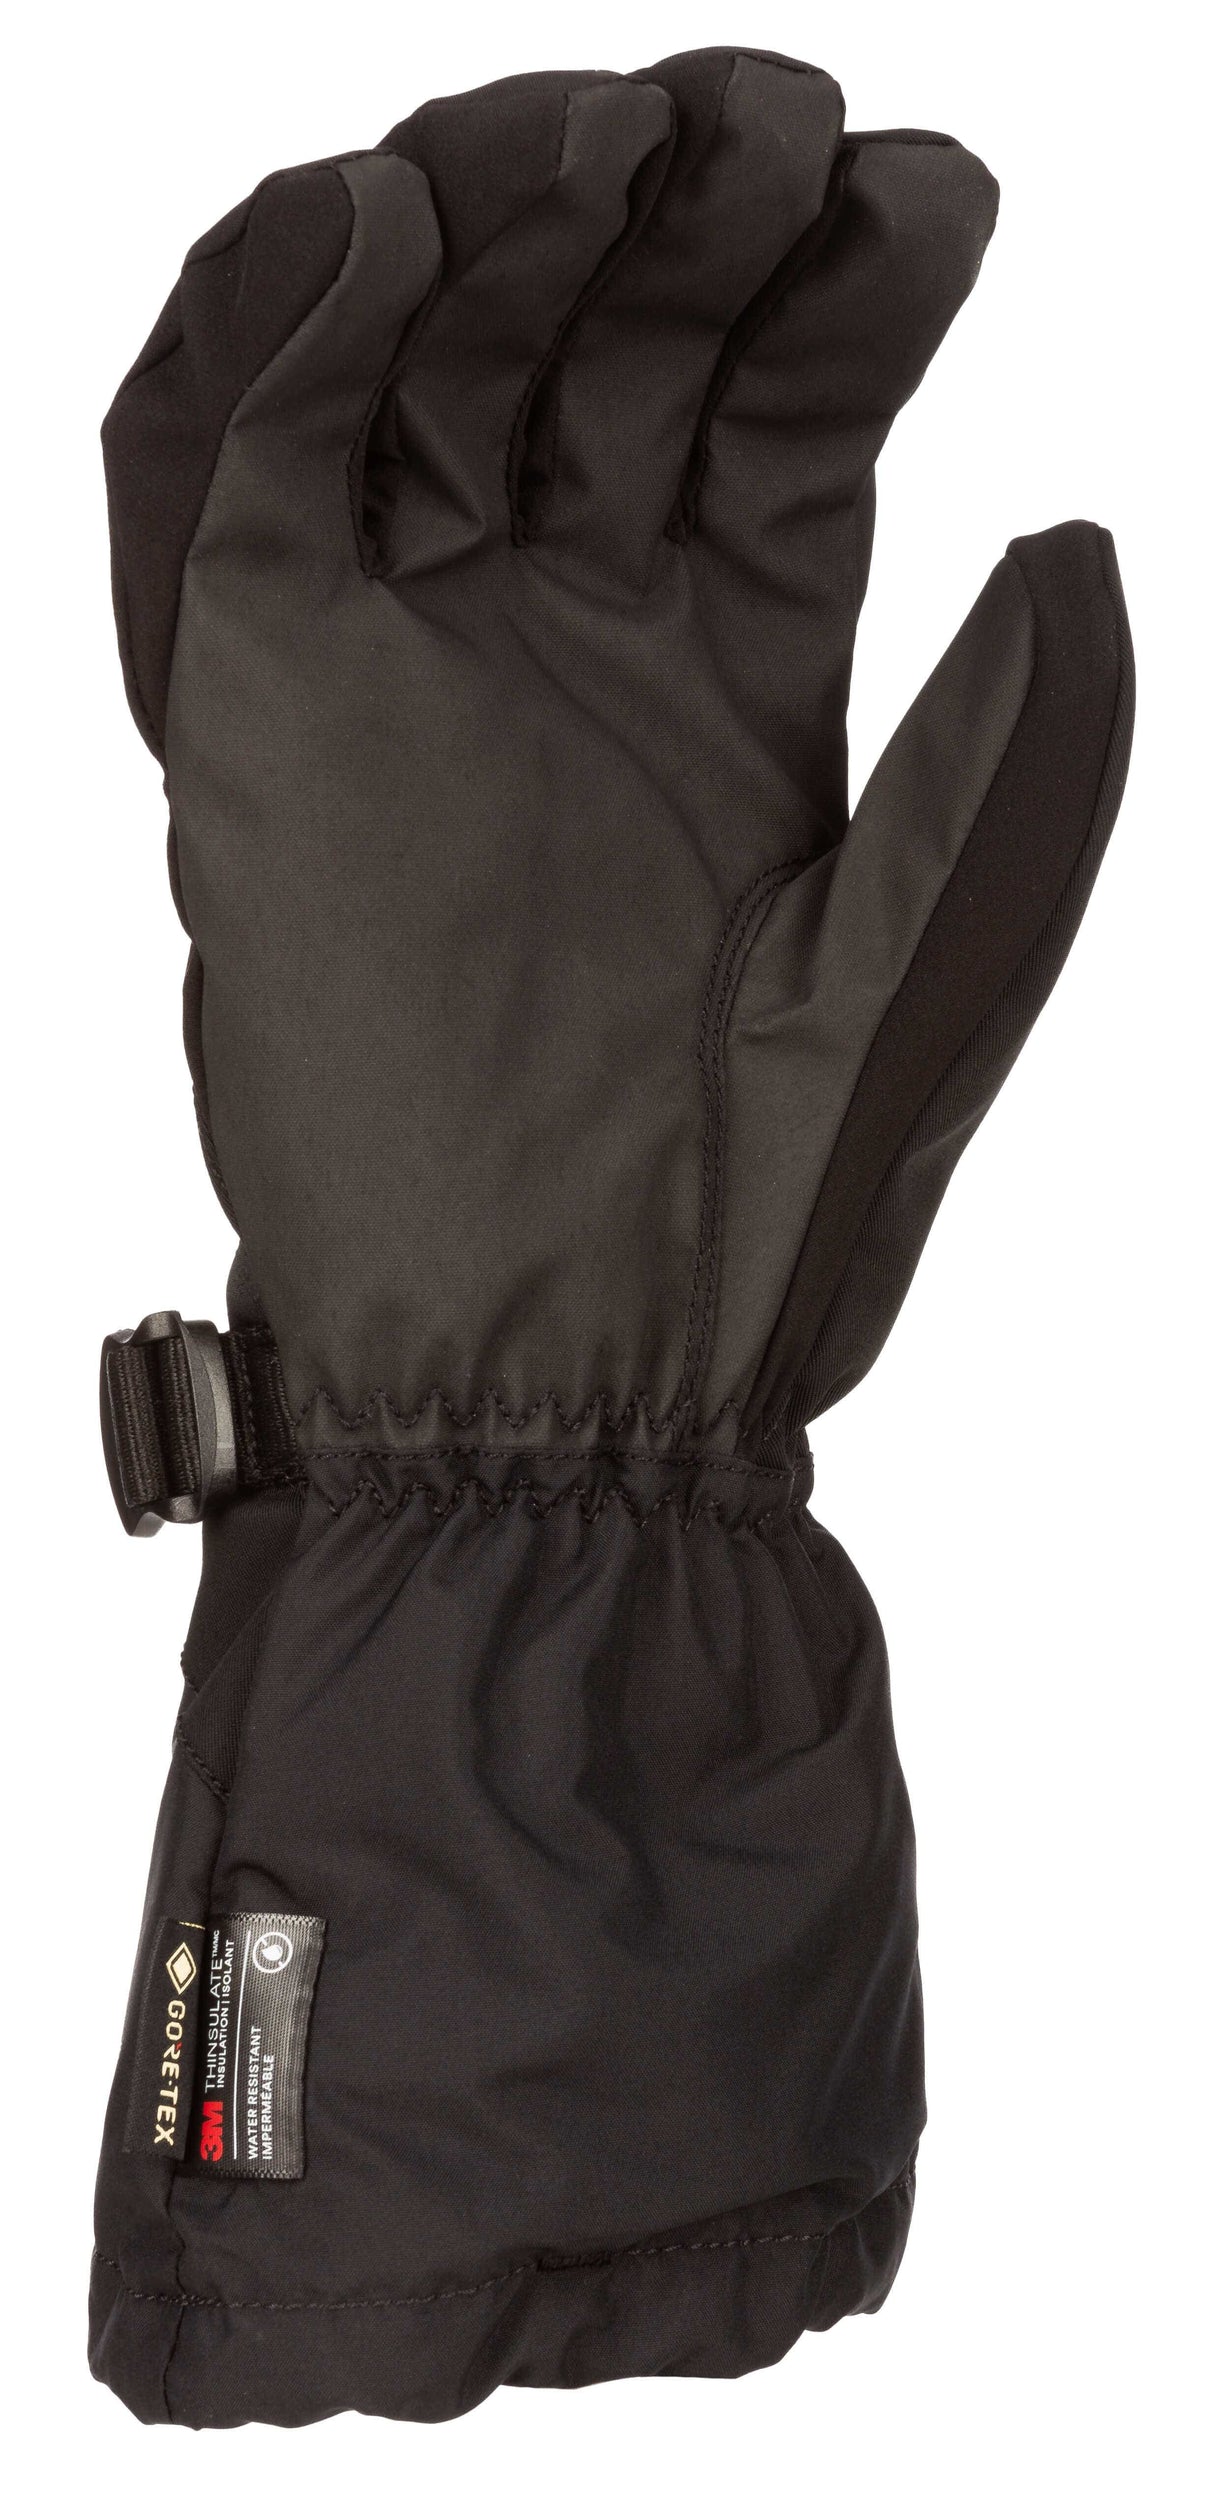 Klim Ember Gauntlet Glove